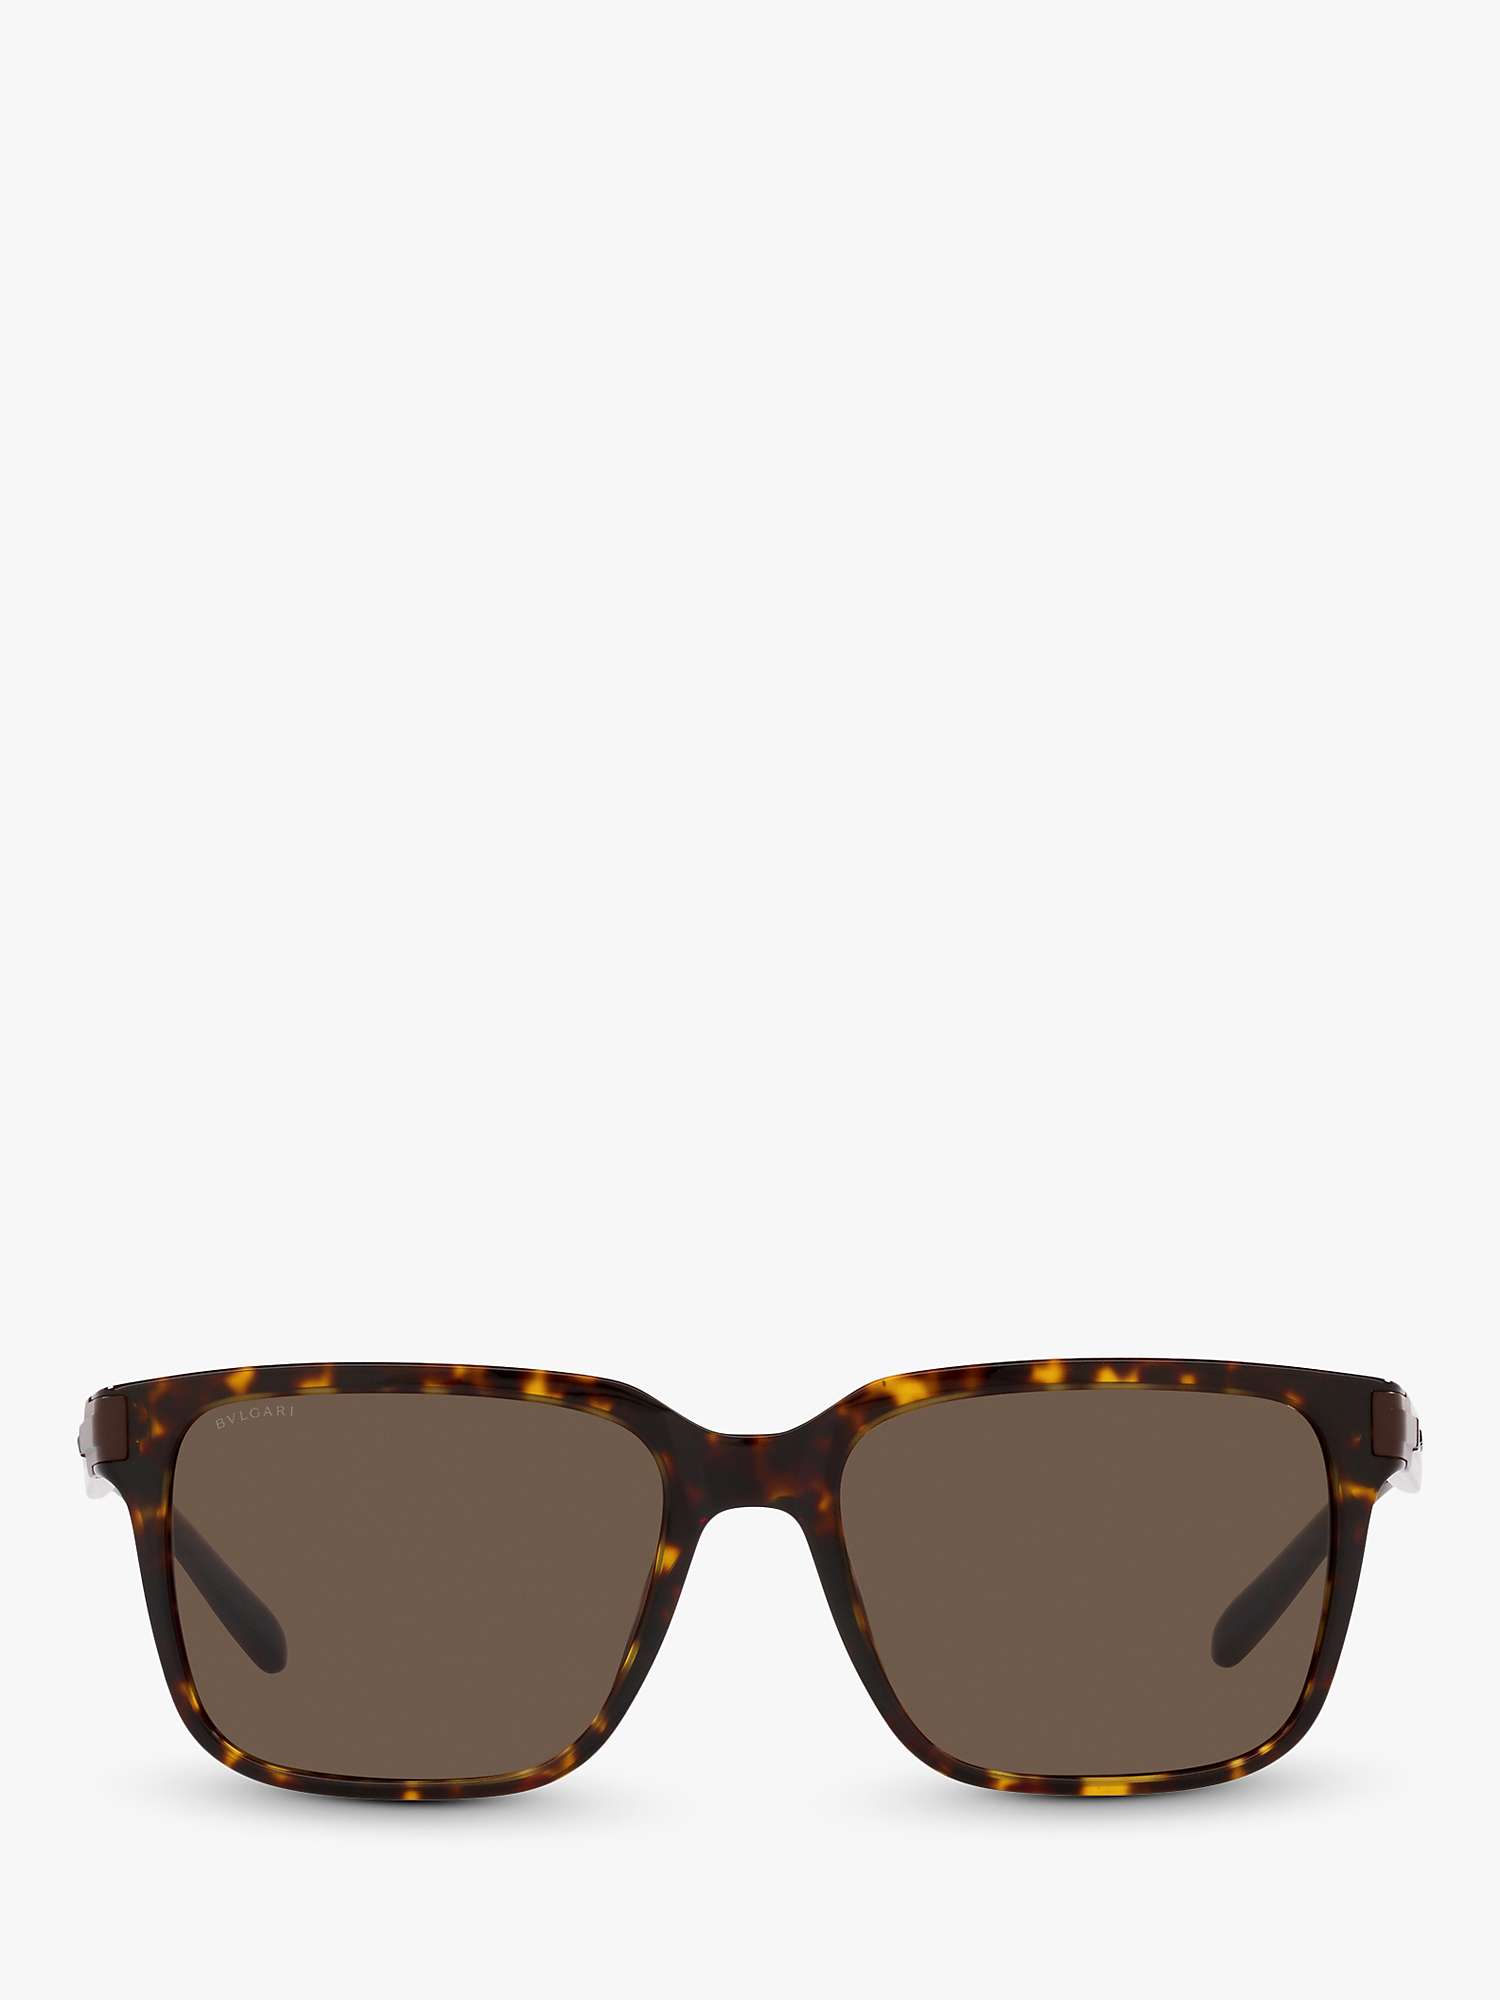 Buy BVLGARI BV7036 Men's Rectangular Sunglasses, Havana/Brown Online at johnlewis.com